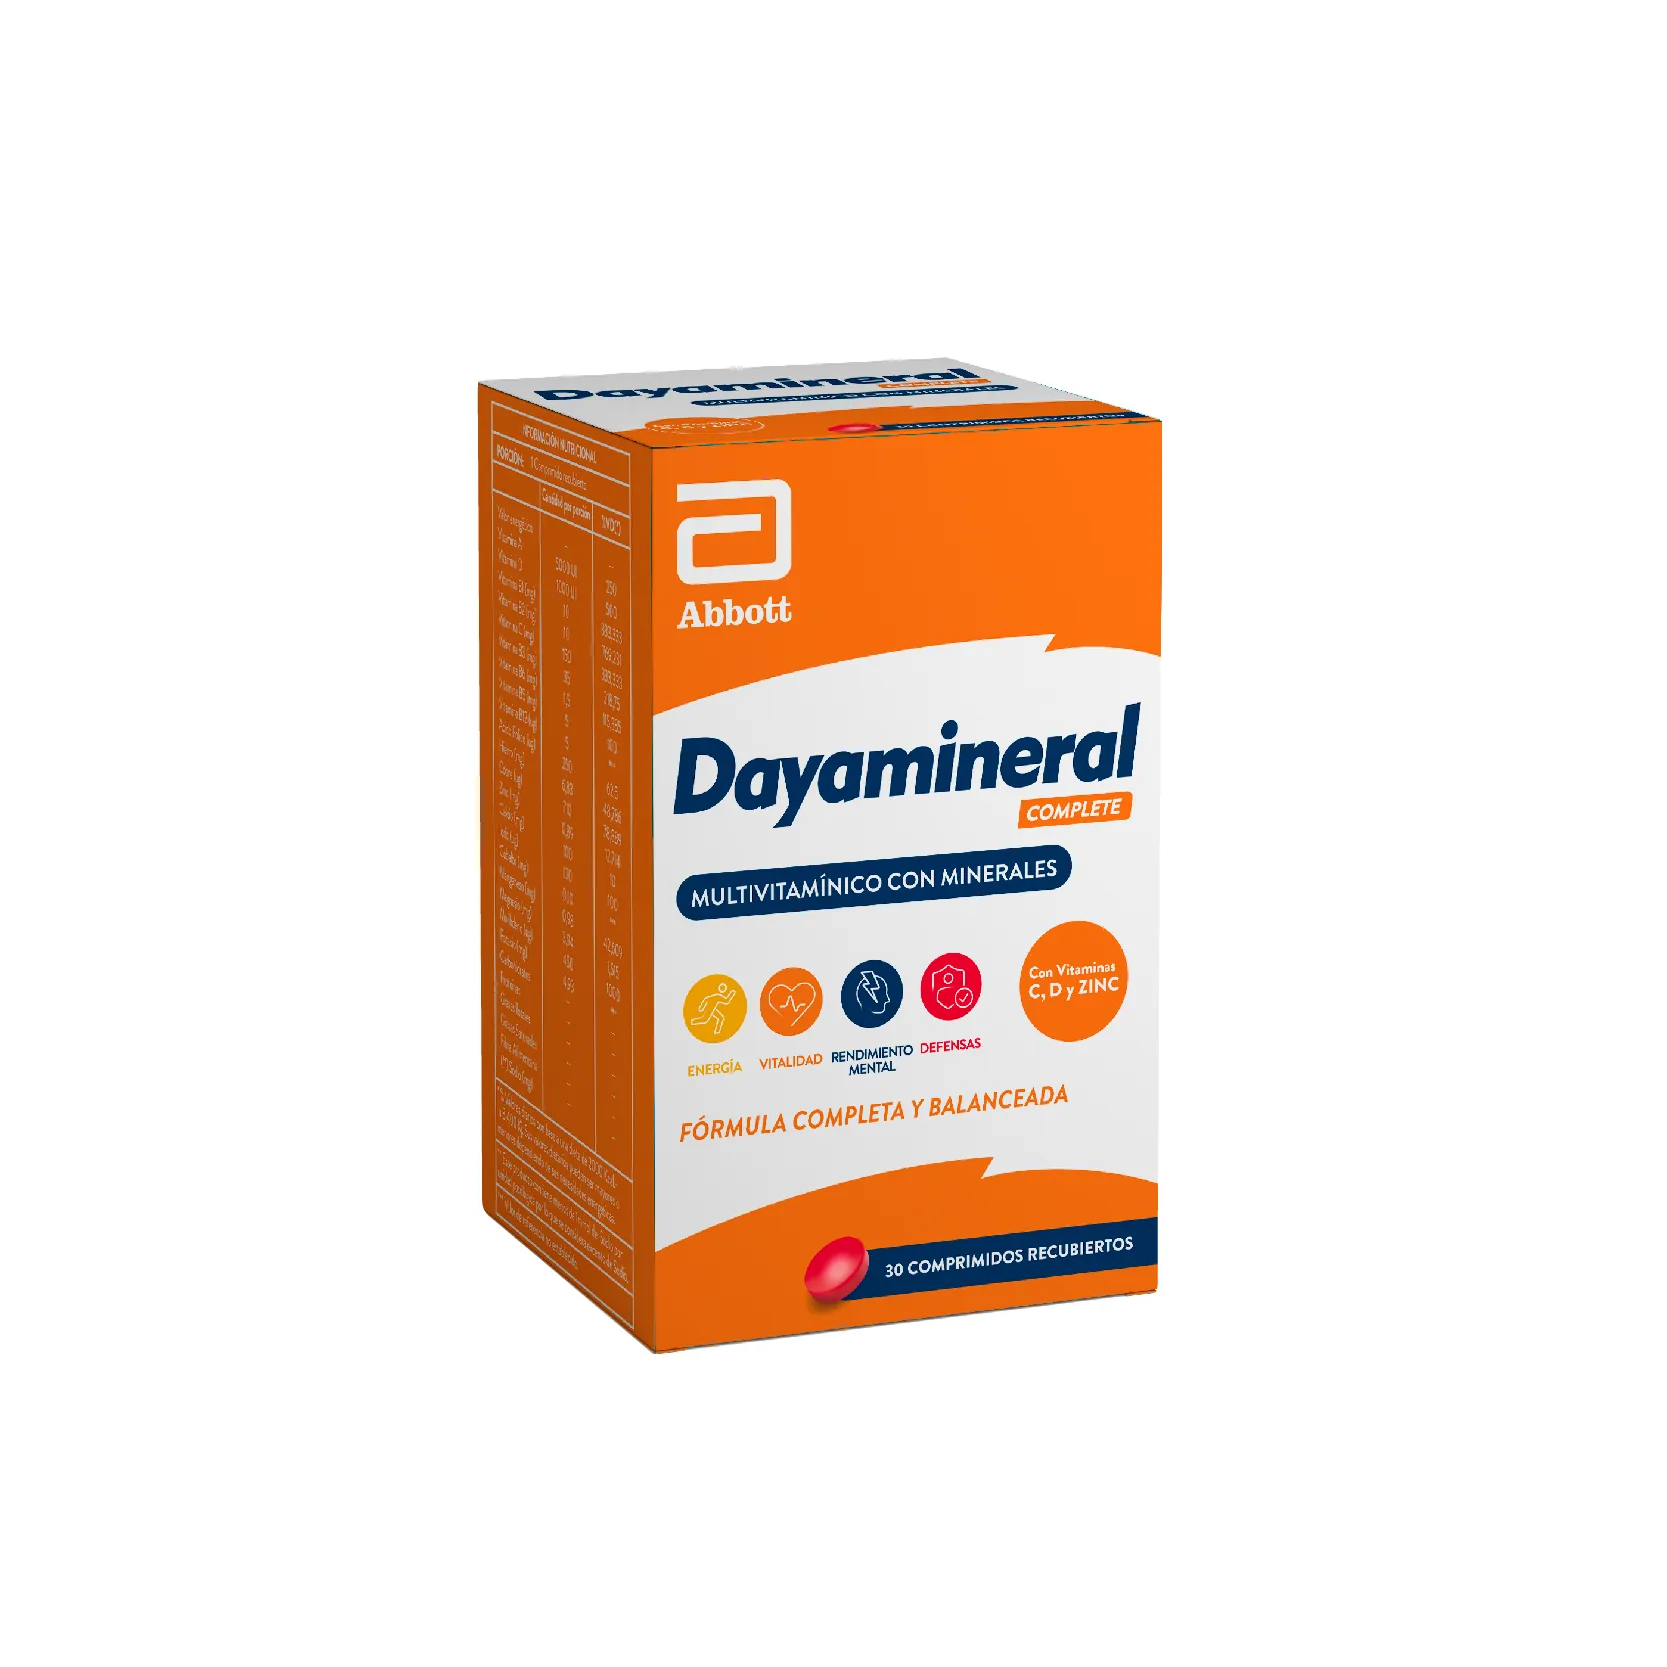 Dayamineral Complete Multivitaminicos Con Minerales - Cont. 30 Comprimidos Recubiertos